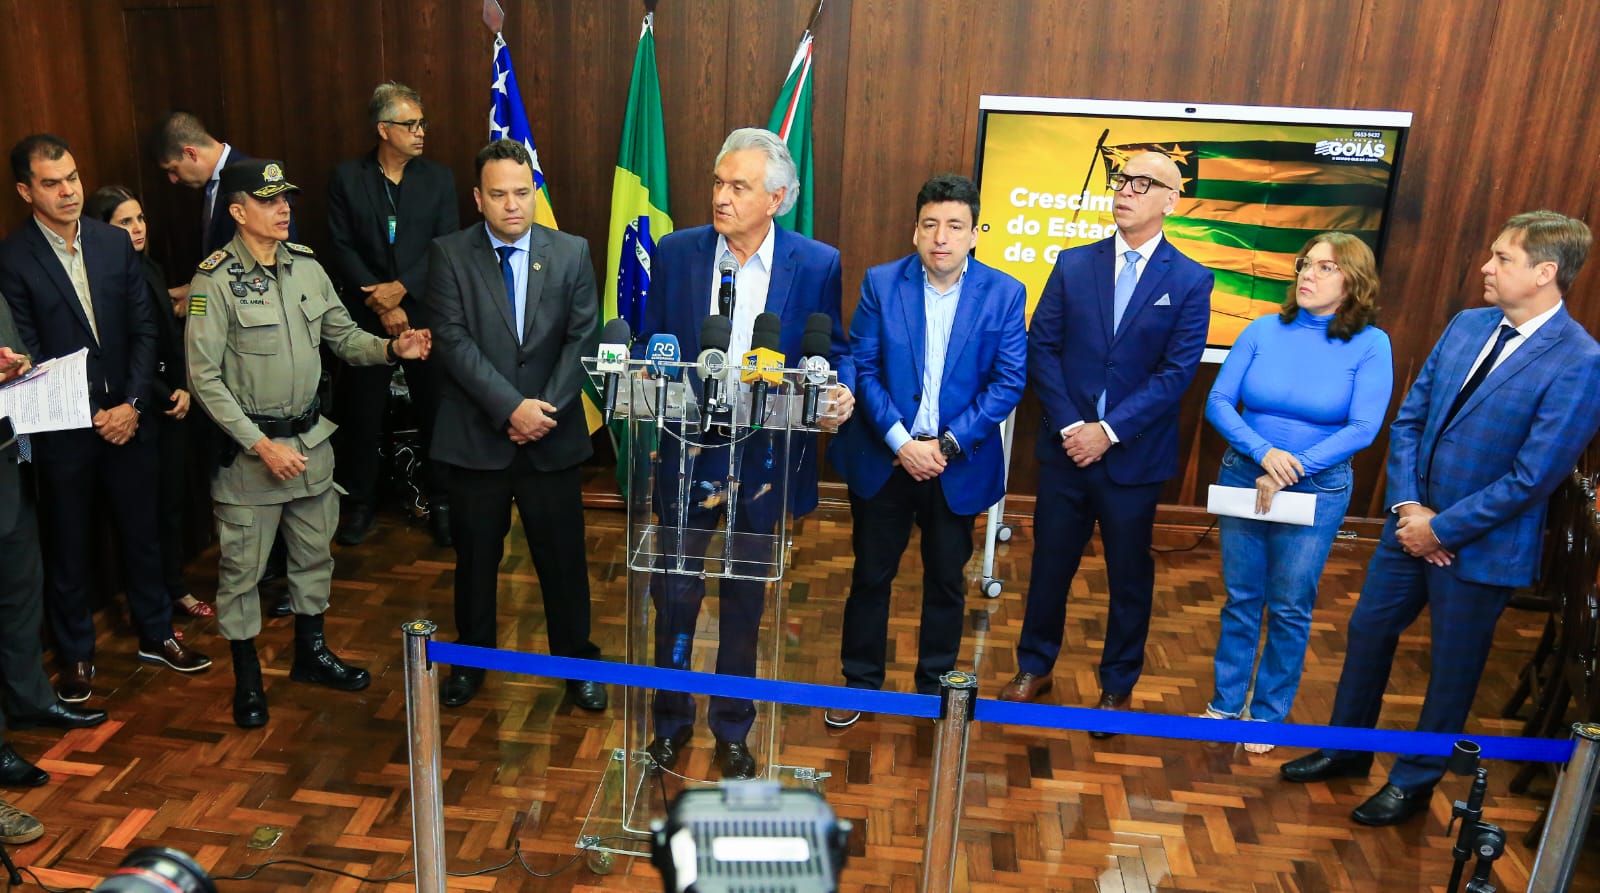 Governador Ronaldo Caiado anuncia nomeação de 1.678 novos servidores: 1.363 policiais militares e 315 professores